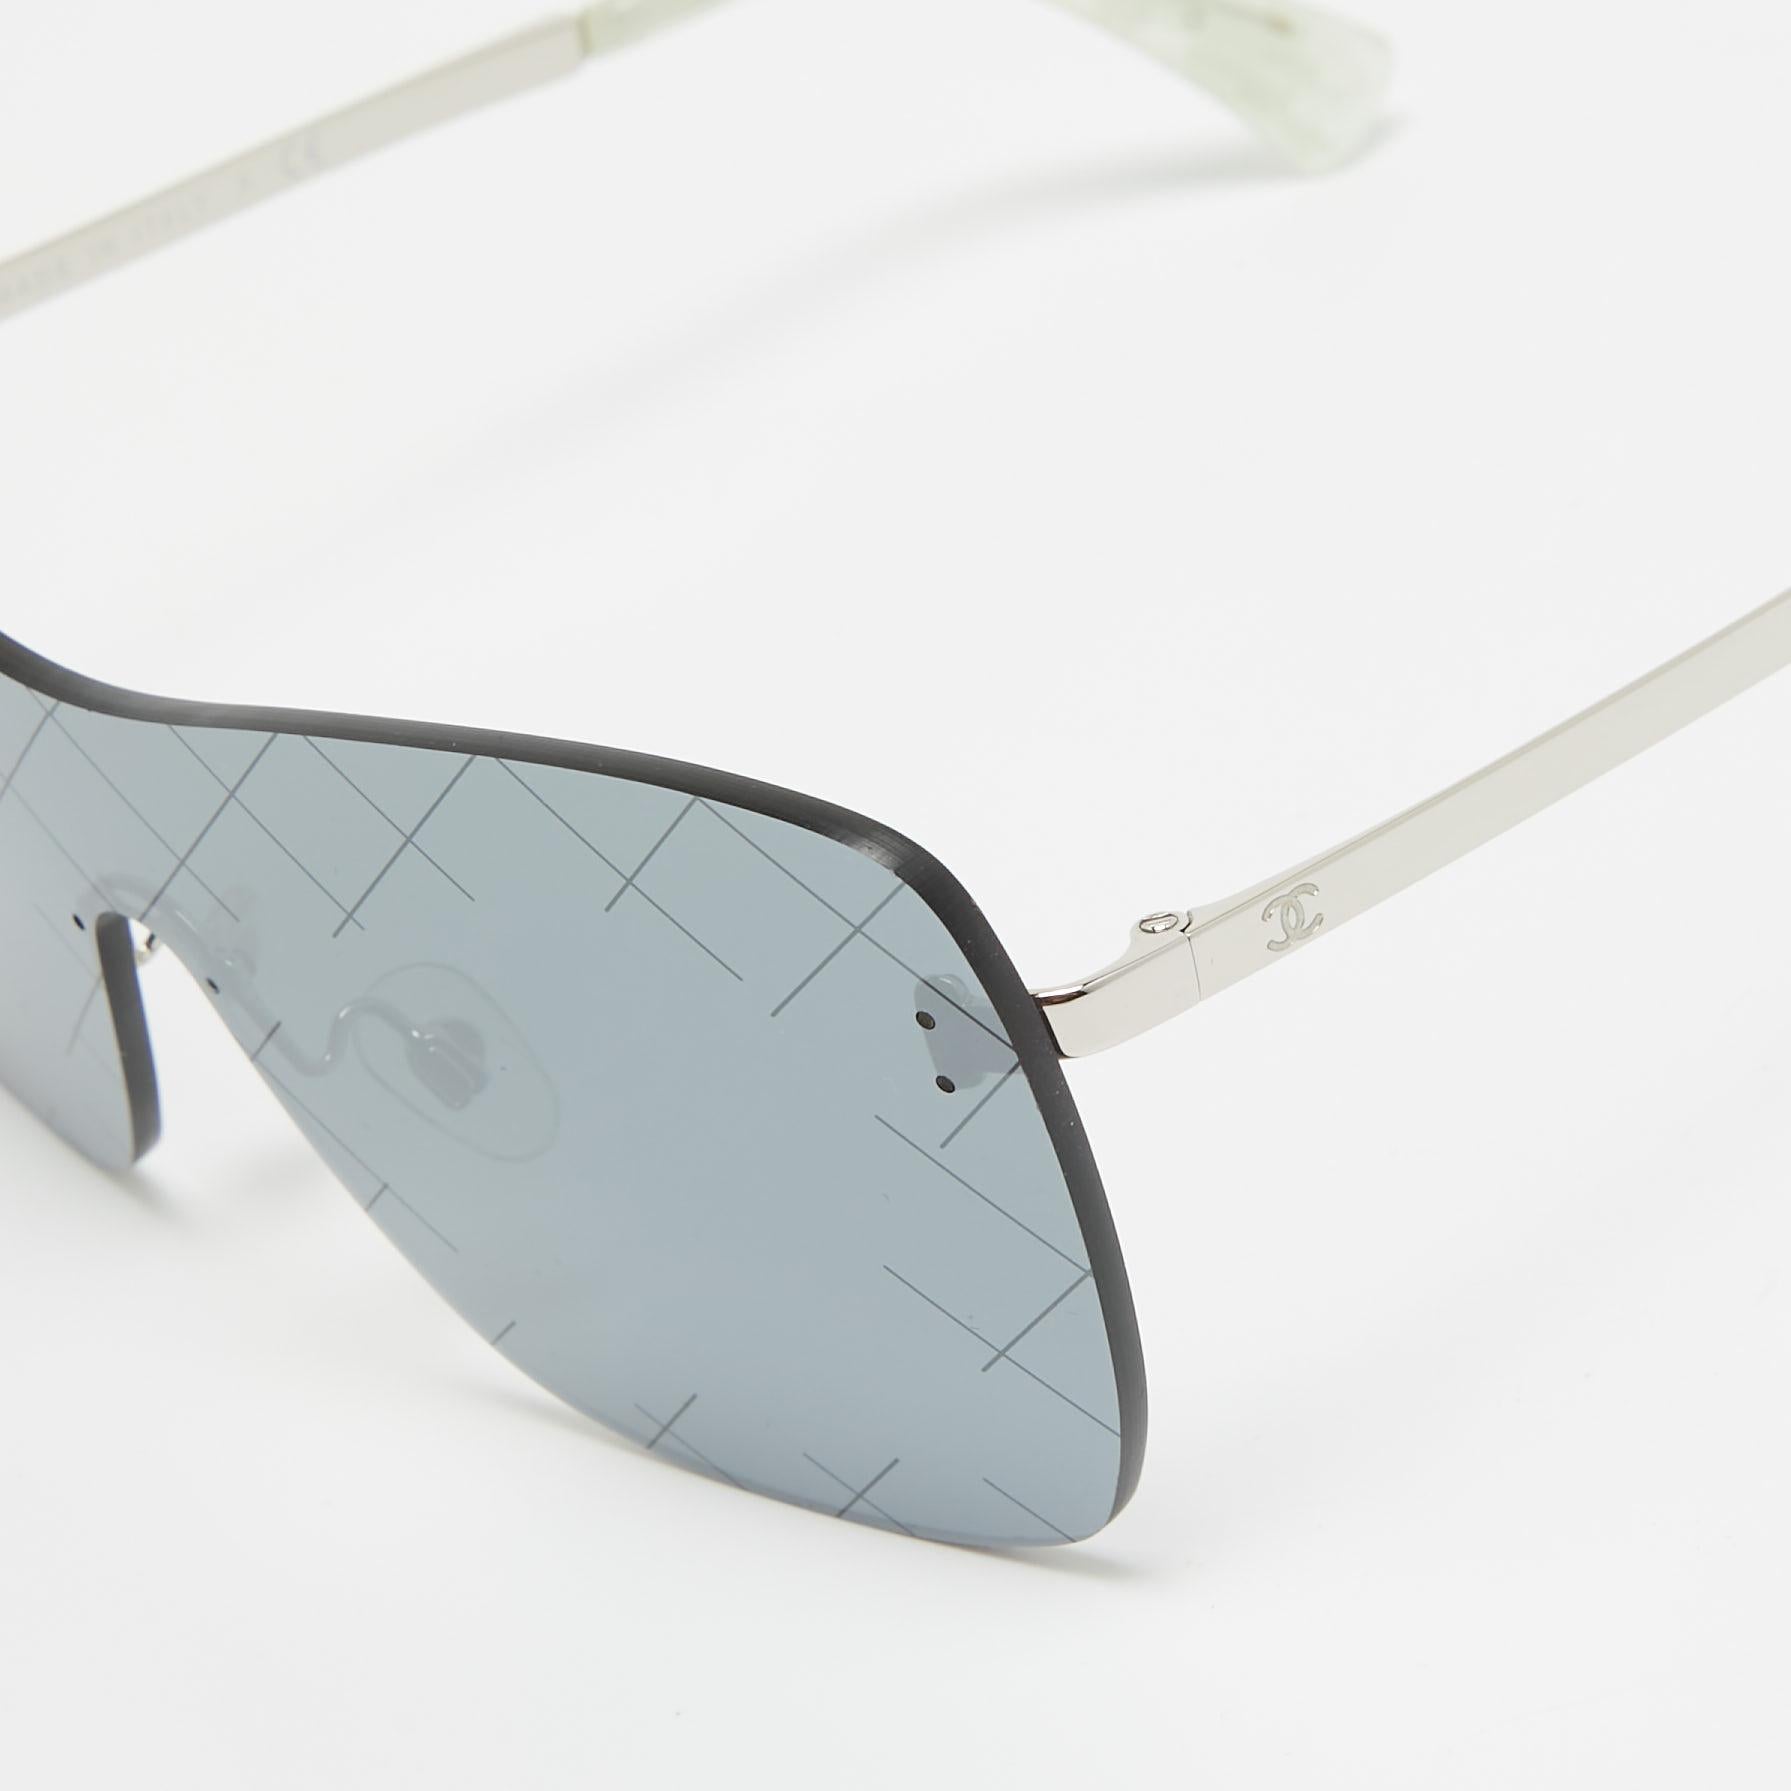 Wir sehen die Details dieser exquisiten Designer-Sonnenbrille, die aus edlen Materialien gefertigt ist. Die Sonnenbrille ist luxuriös in der Anmutung und praktisch im Gebrauch.

Enthält: Original Etui

